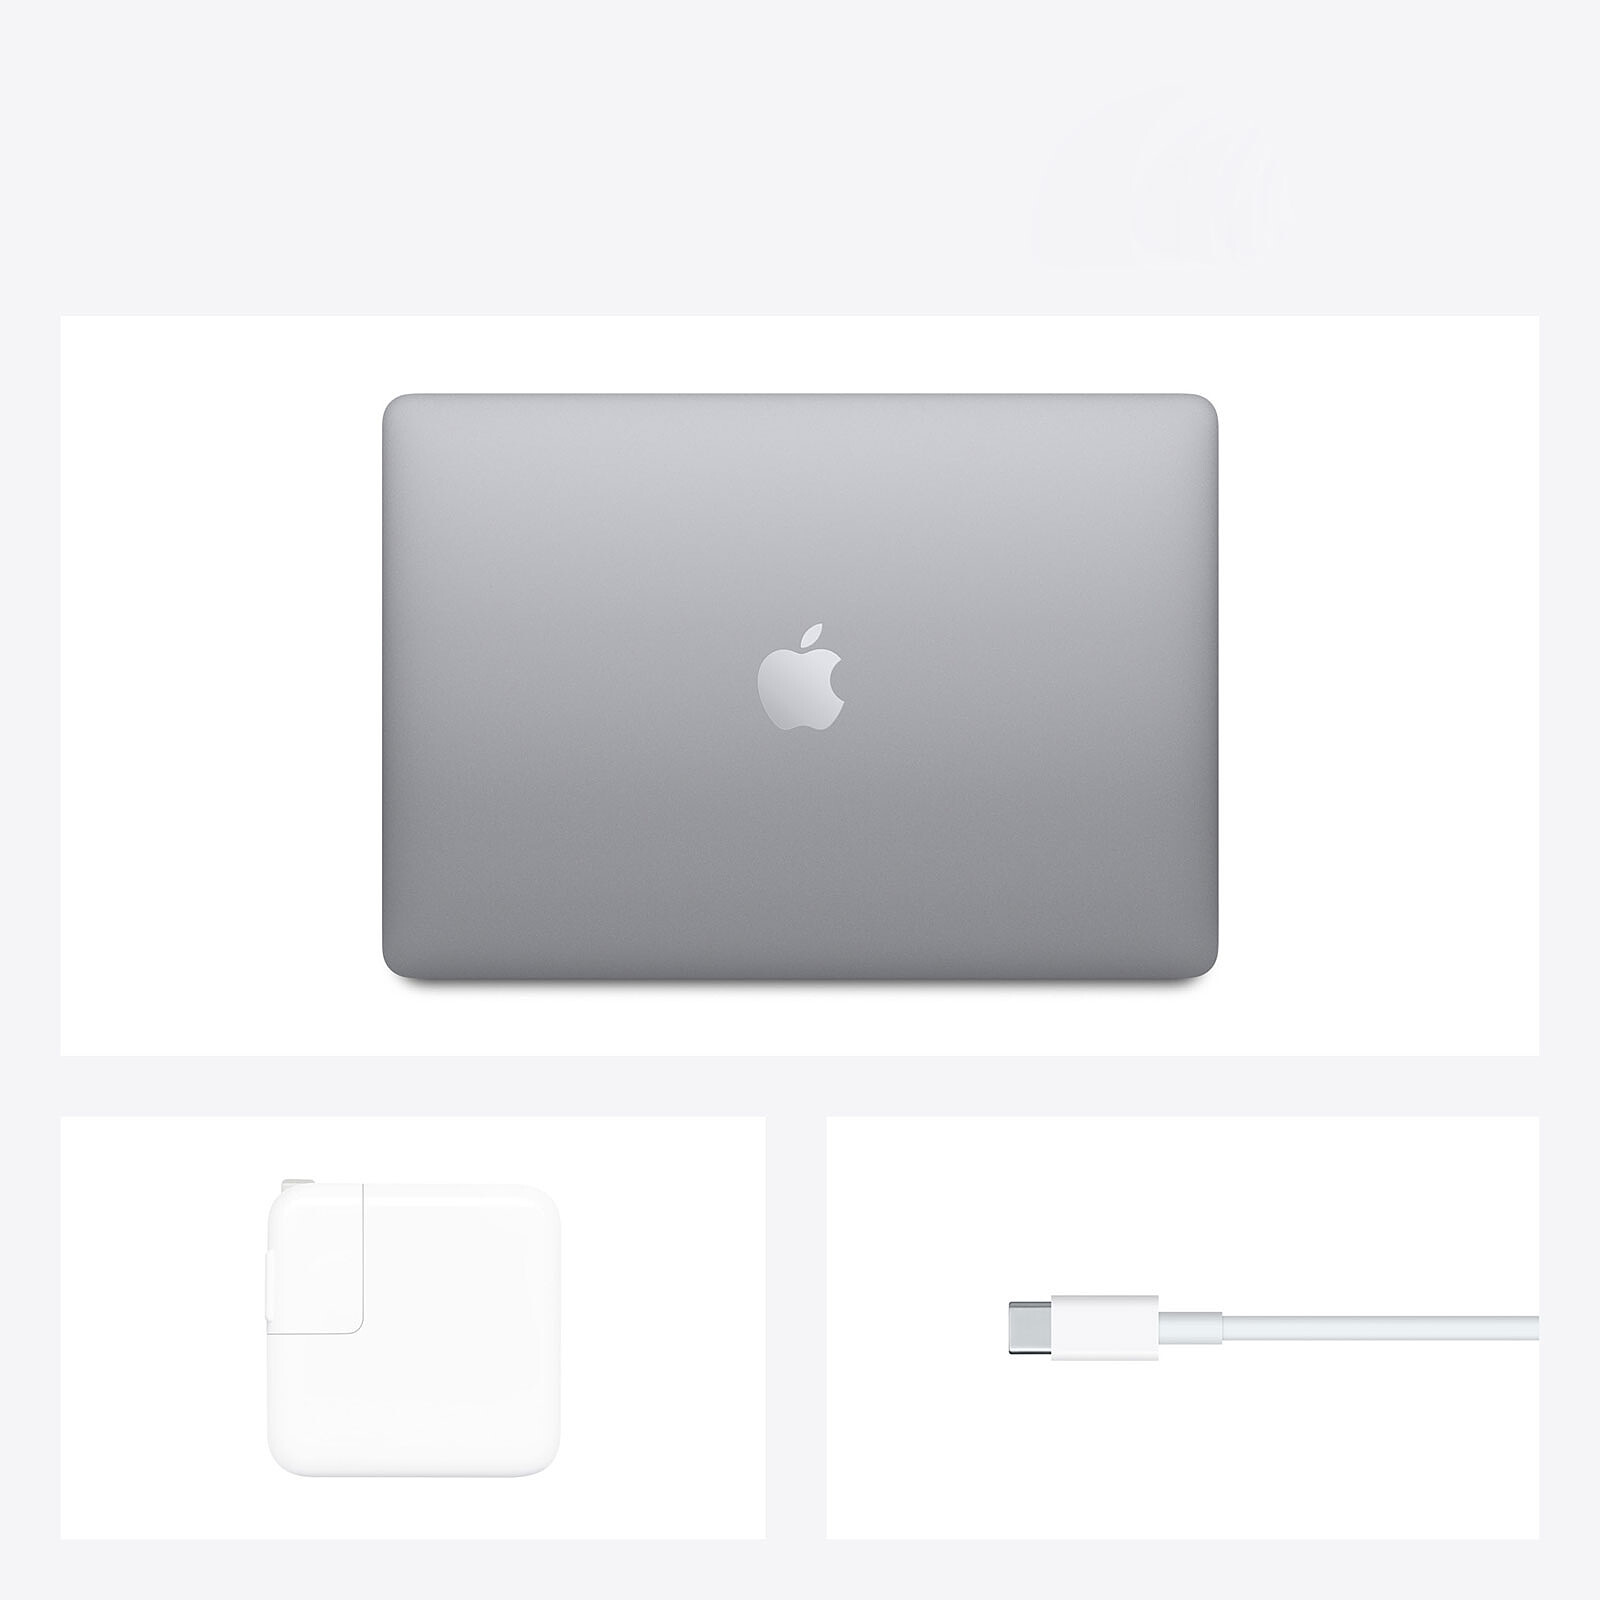 アウトレット最安価格  CTO 512GB 16GB 2020 M1 Ari MacBook ノートPC